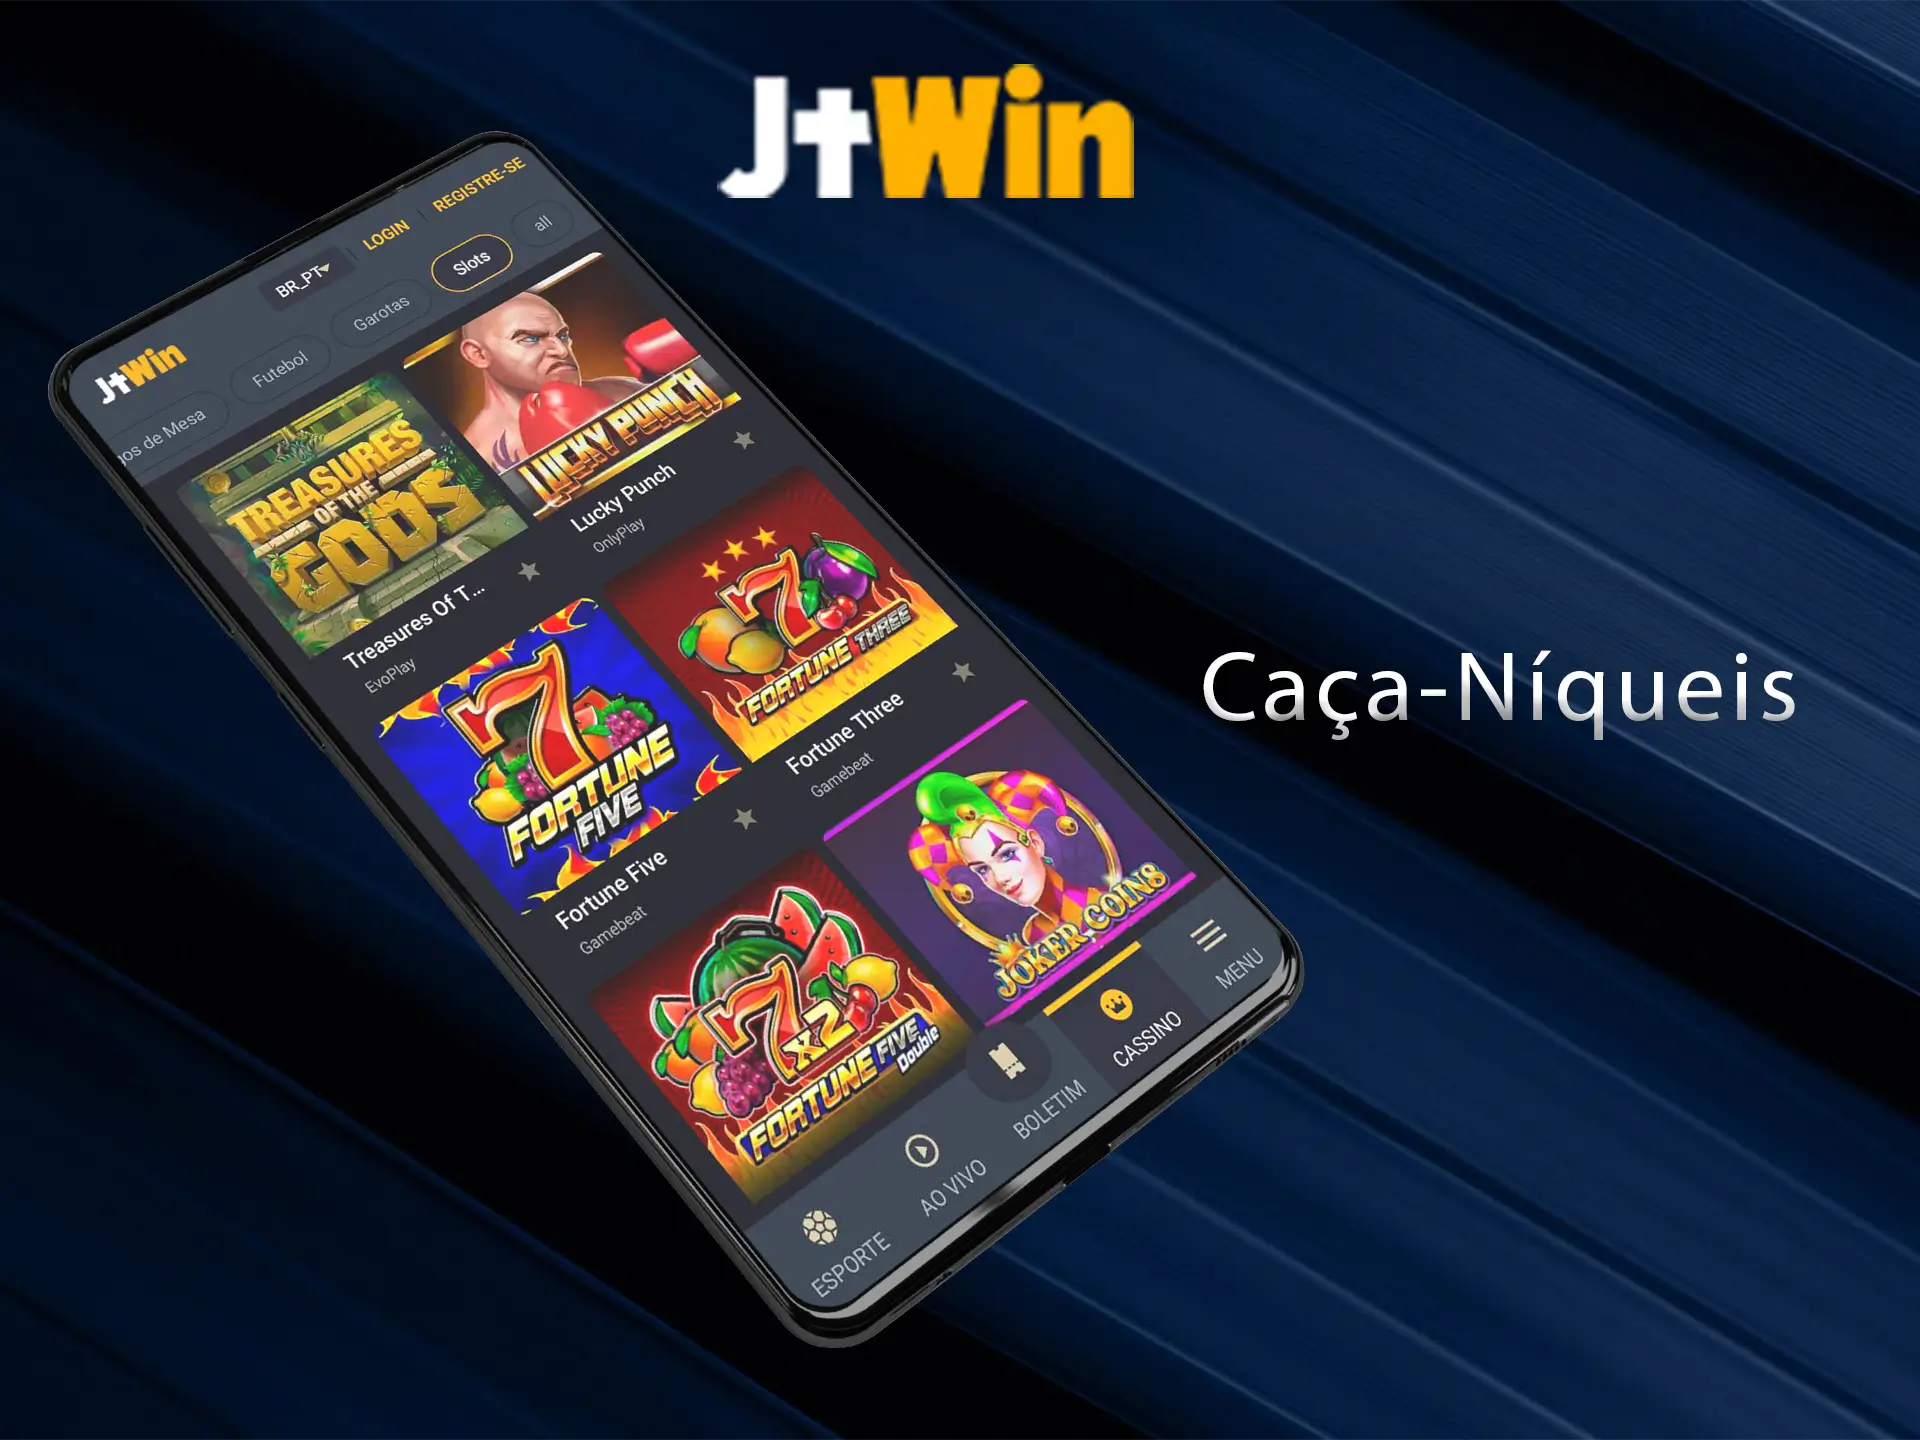 Muitas das slots mais populares estão disponíveis para jogar no JeetWin Casino.